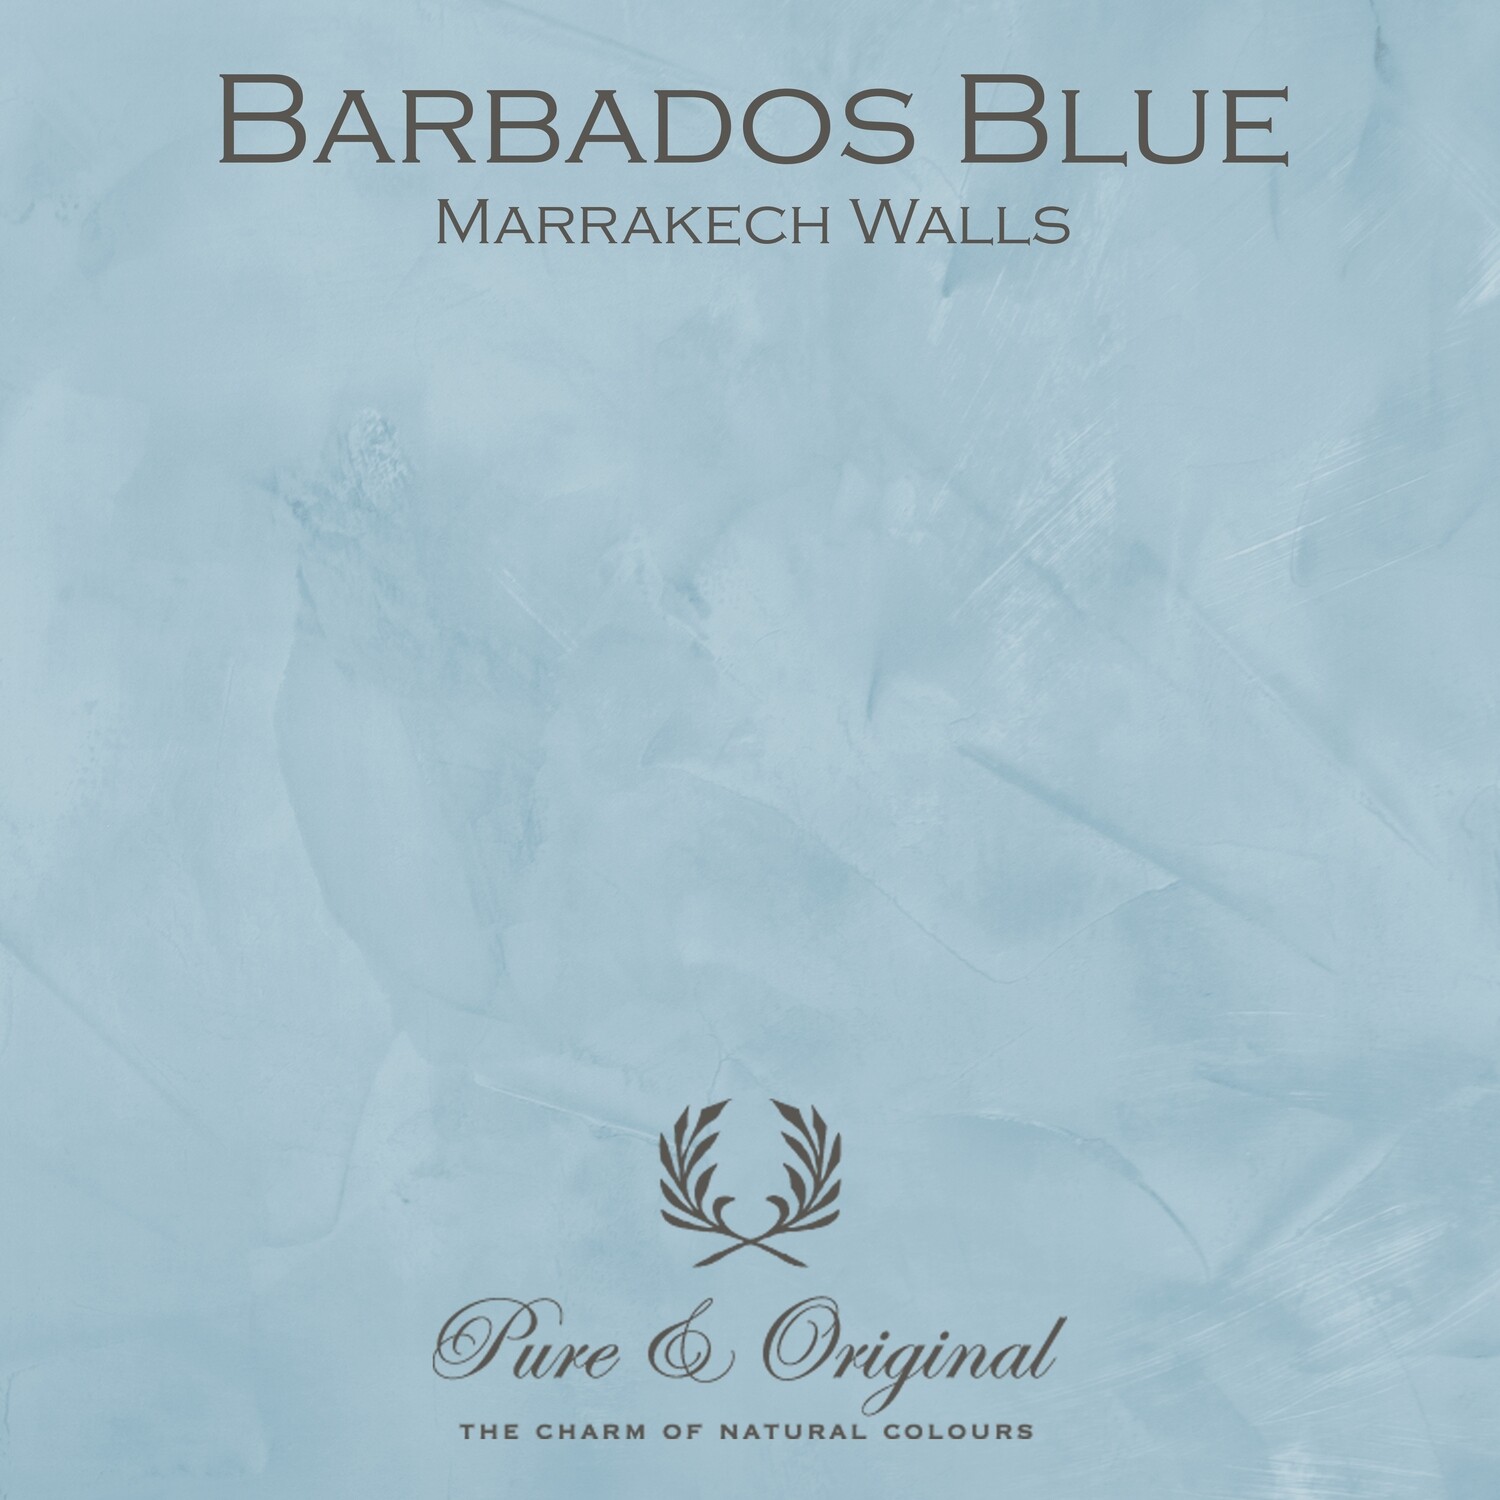 Barbados Blue Marrakech